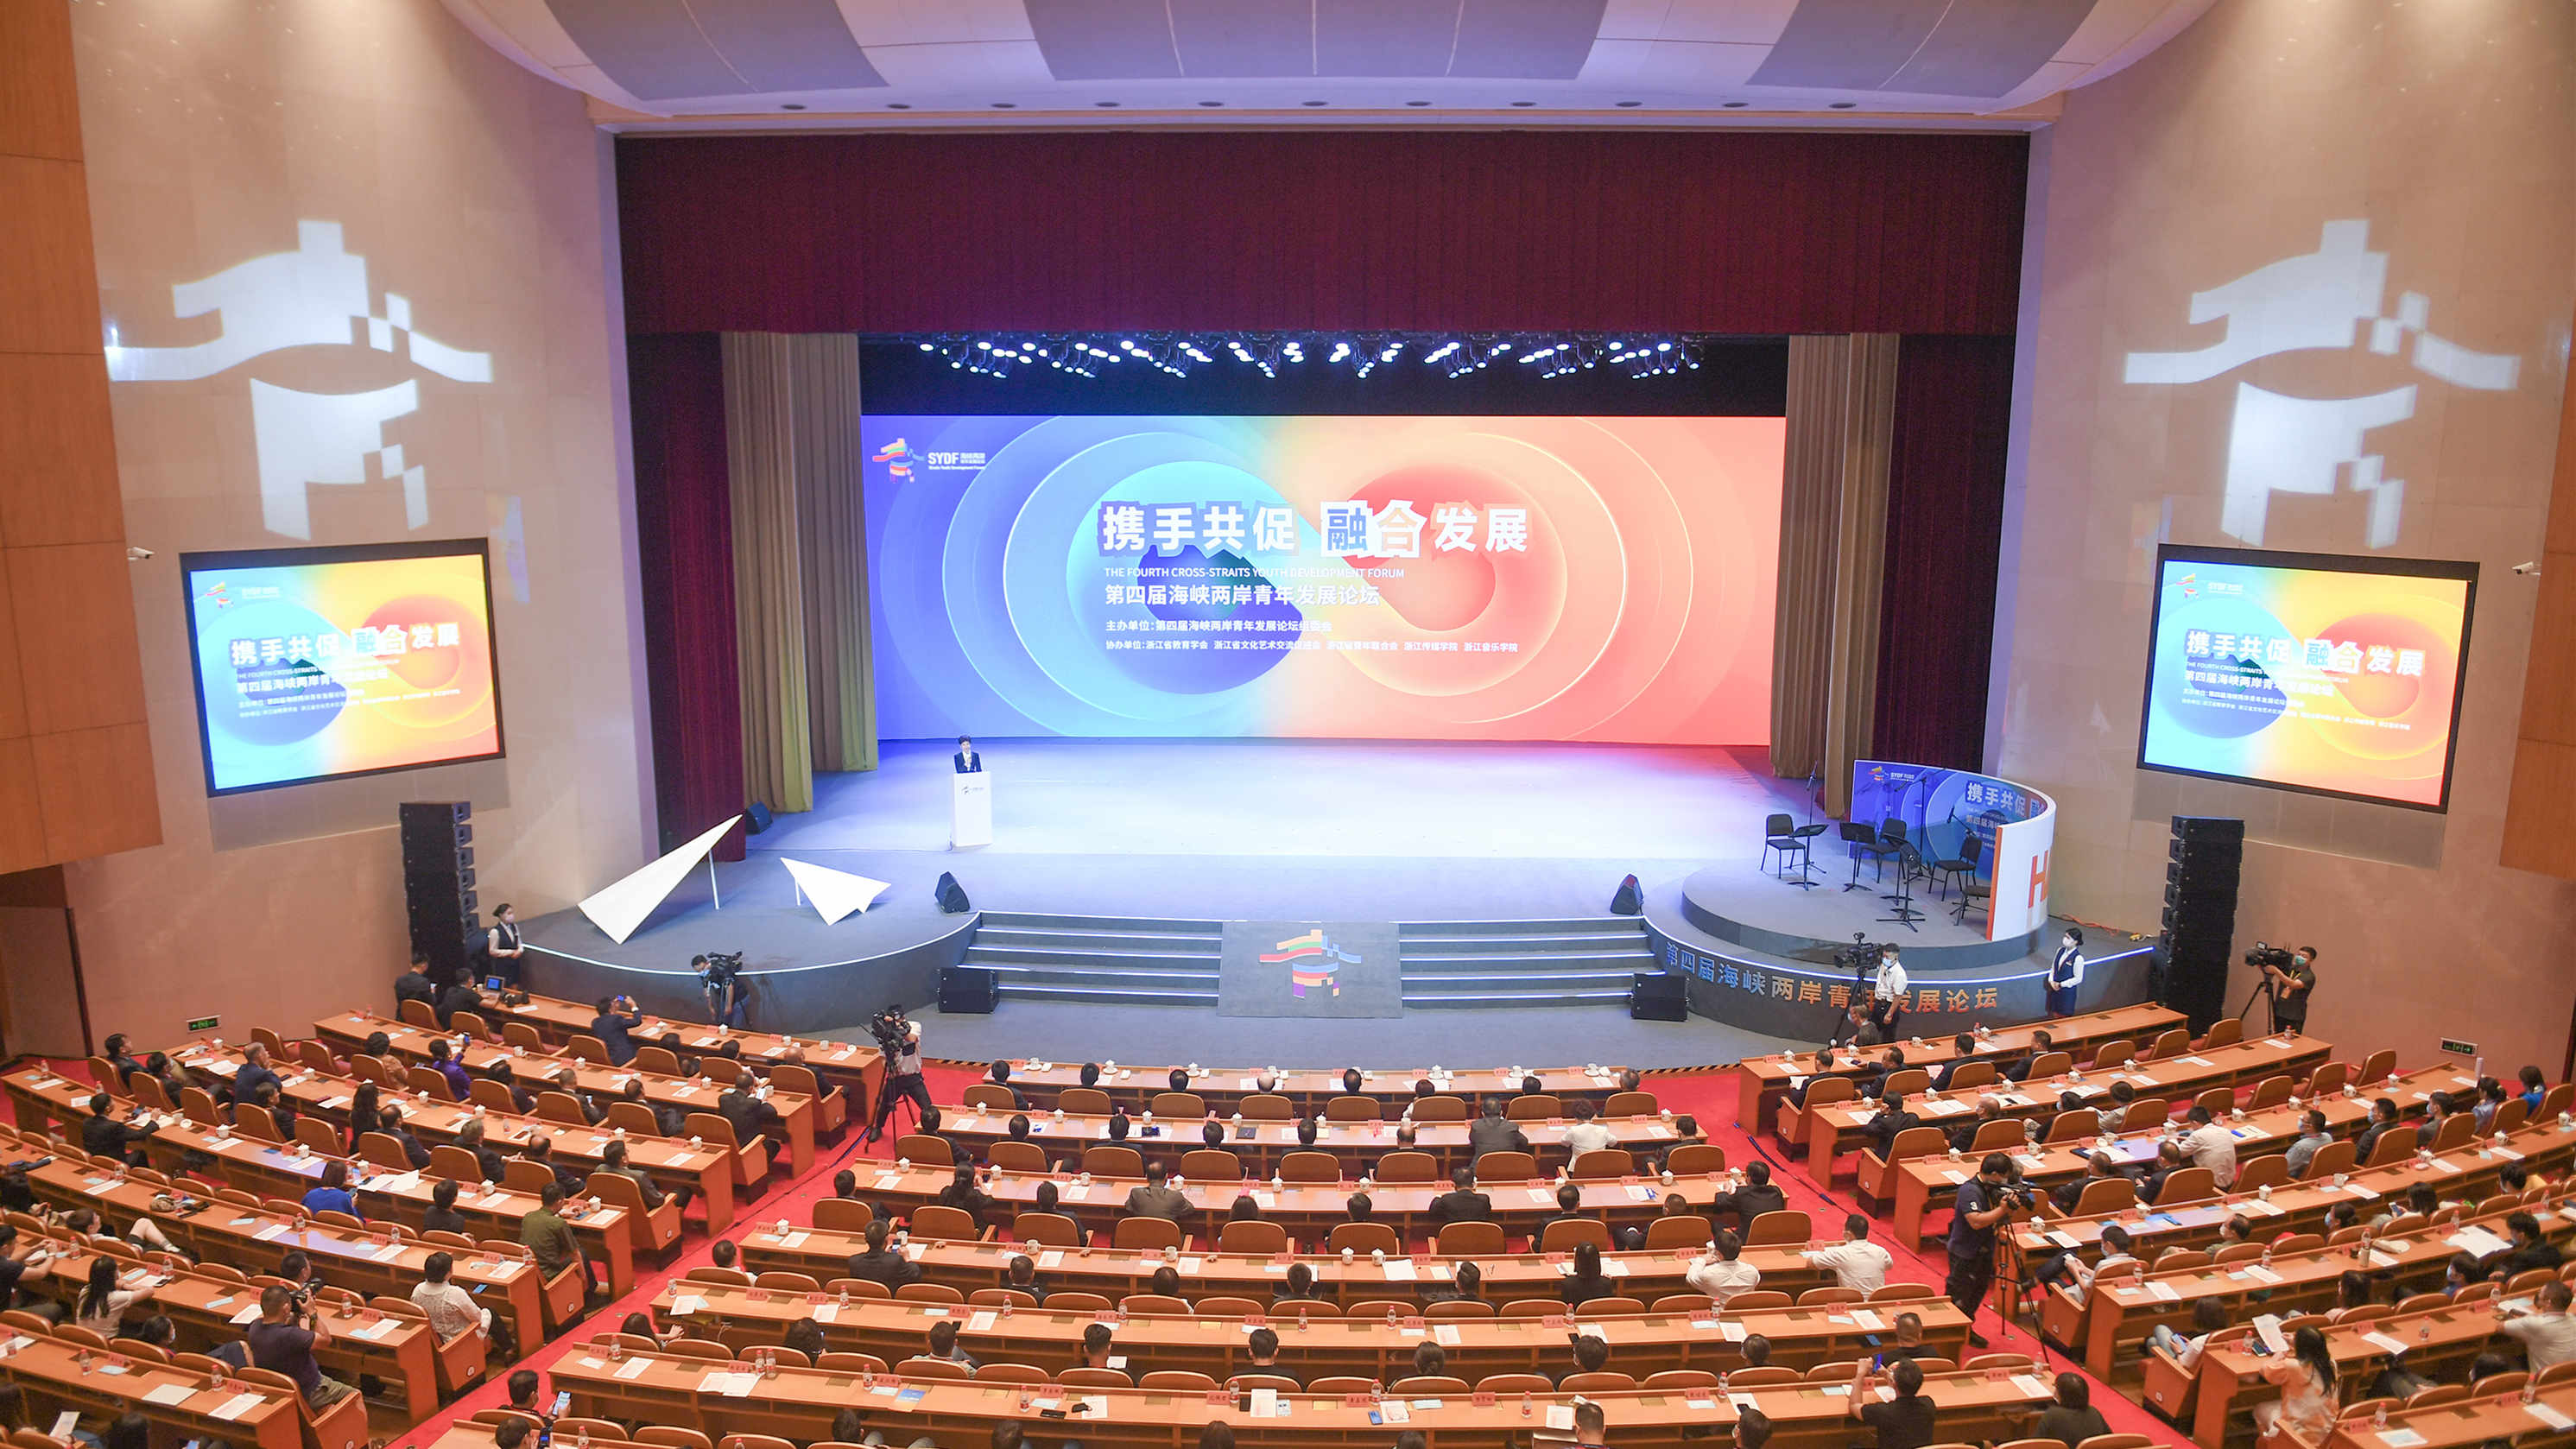 第五屆海峽兩岸青年發展論壇在杭州舉辦 汪洋致信祝賀